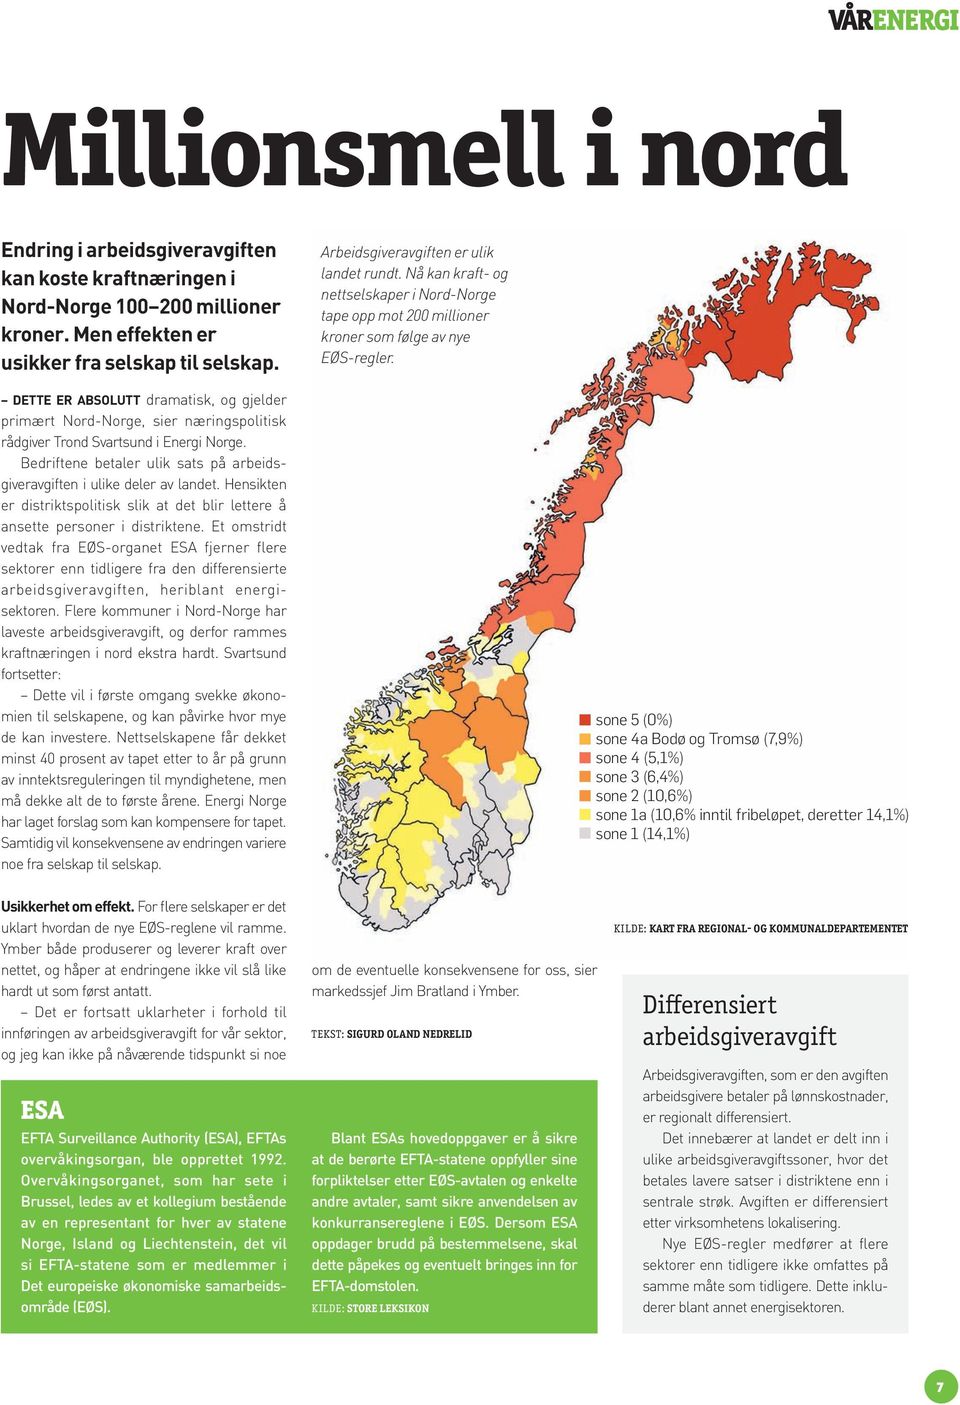 DETTE ER ABSOLUTT dramatisk, og gjelder primært Nord-Norge, sier næringspolitisk rådgiver Trond Svartsund i Energi Norge. Bedriftene betaler ulik sats på arbeidsgiveravgiften i ulike deler av landet.